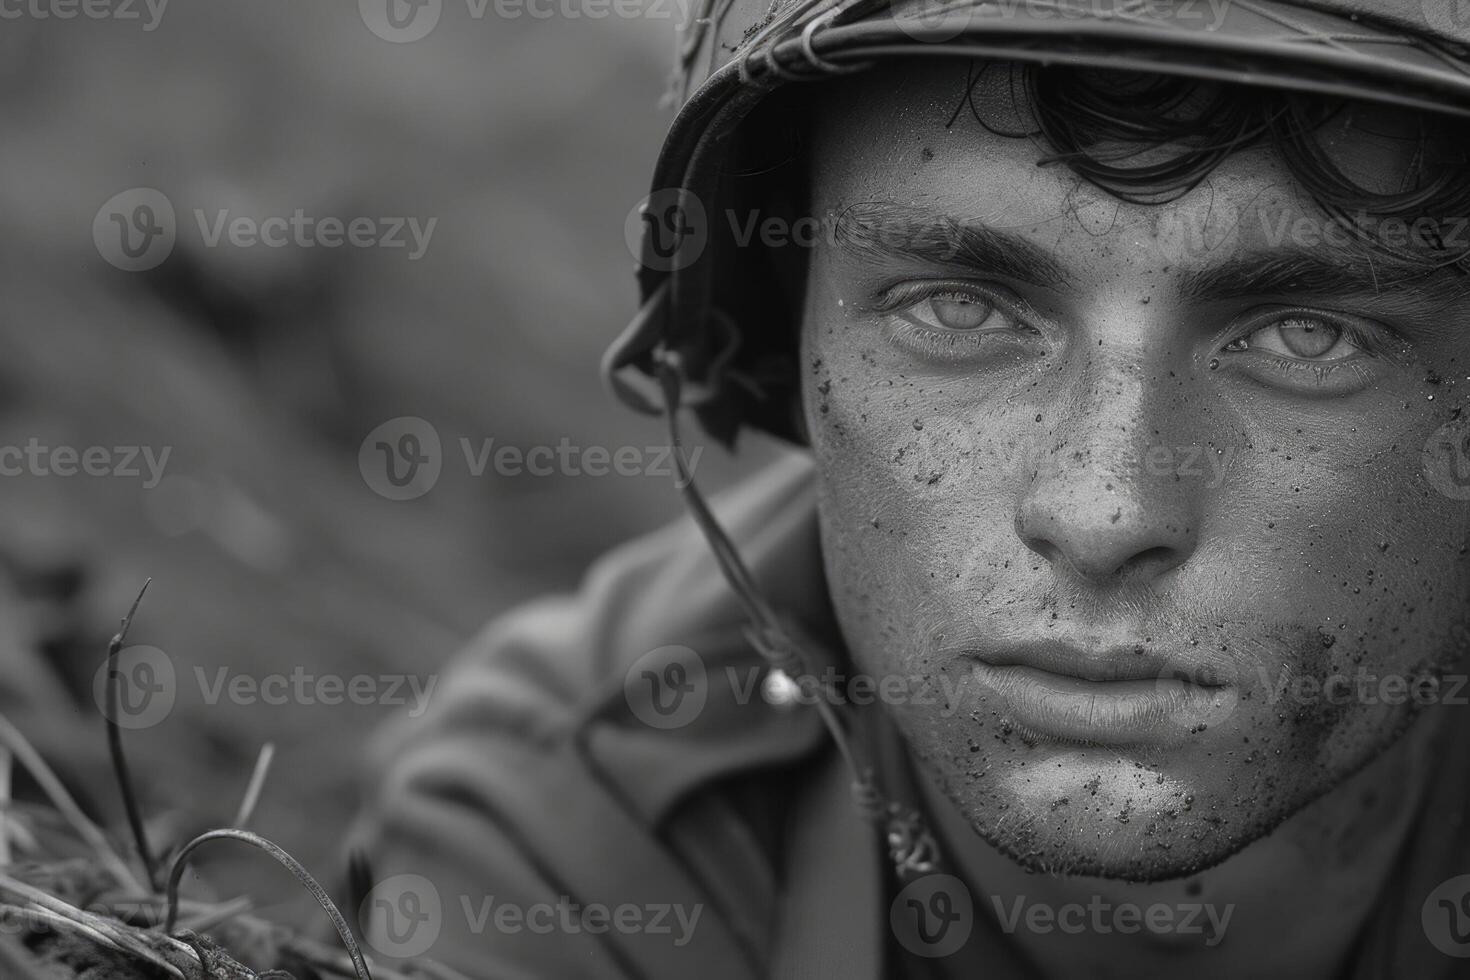 ai generado conmovedor tiempo de guerra retrato, sacrificio y valentía en un de soldado emocional fotografía desde el segundo genial guerra, un poderoso representación de humano Peaje y Resiliencia en medio de lucha para libertad foto